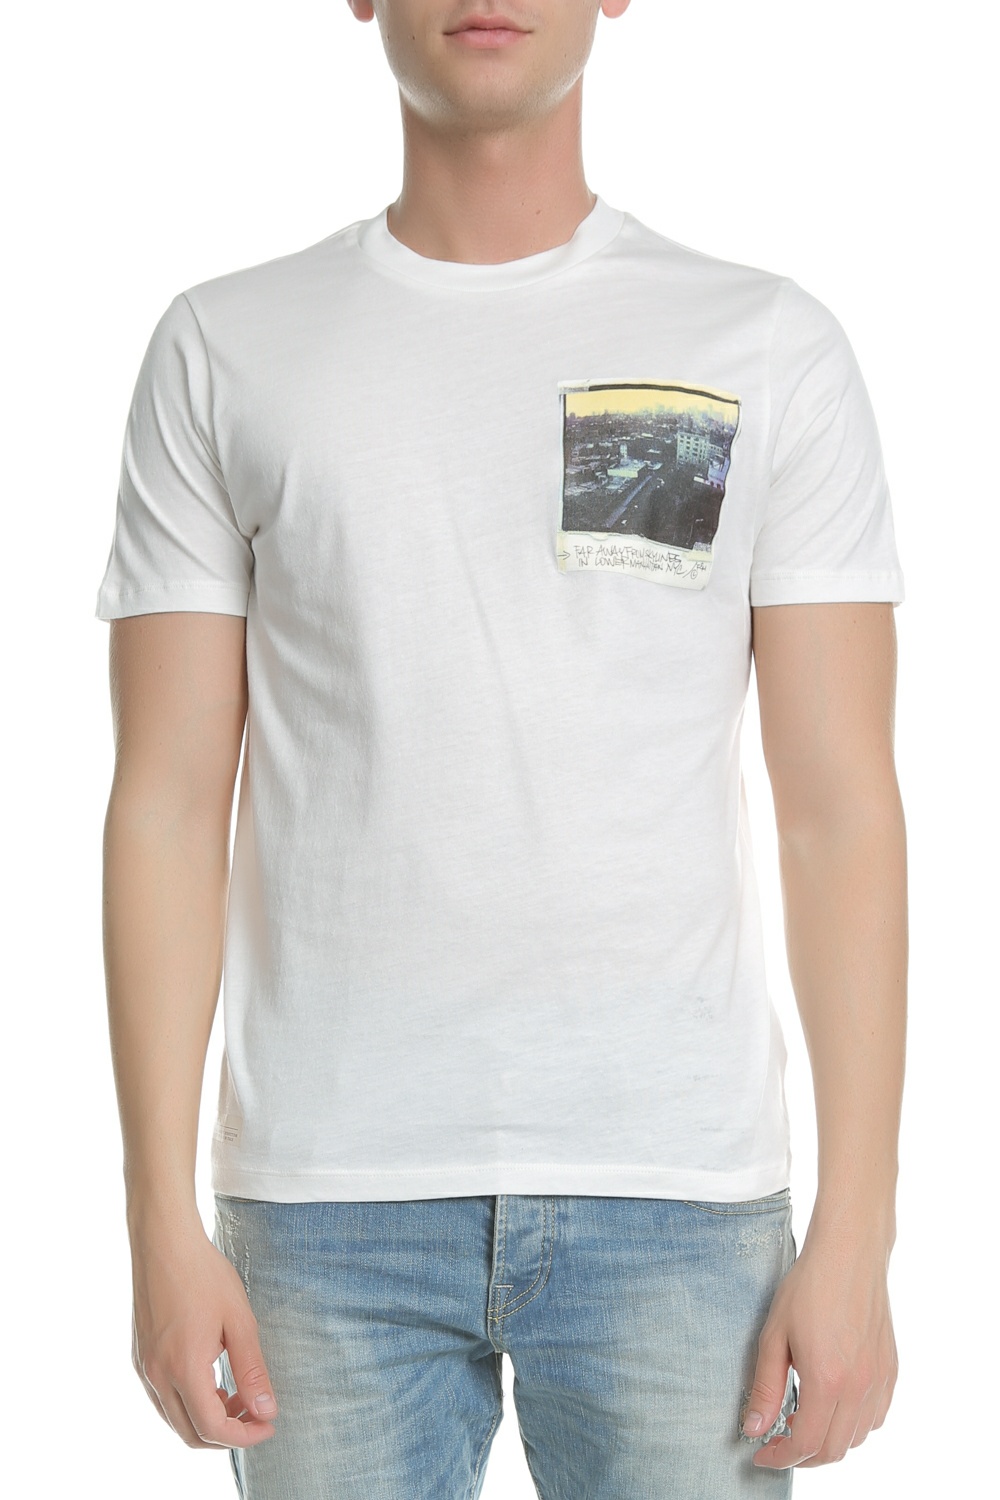 Ανδρικά/Ρούχα/Μπλούζες/Κοντομάνικες FRANKLIN & MARSHALL - Ανδρική κοντομάνικη μπλούζα FRANKLIN & MARSHALL λευκή